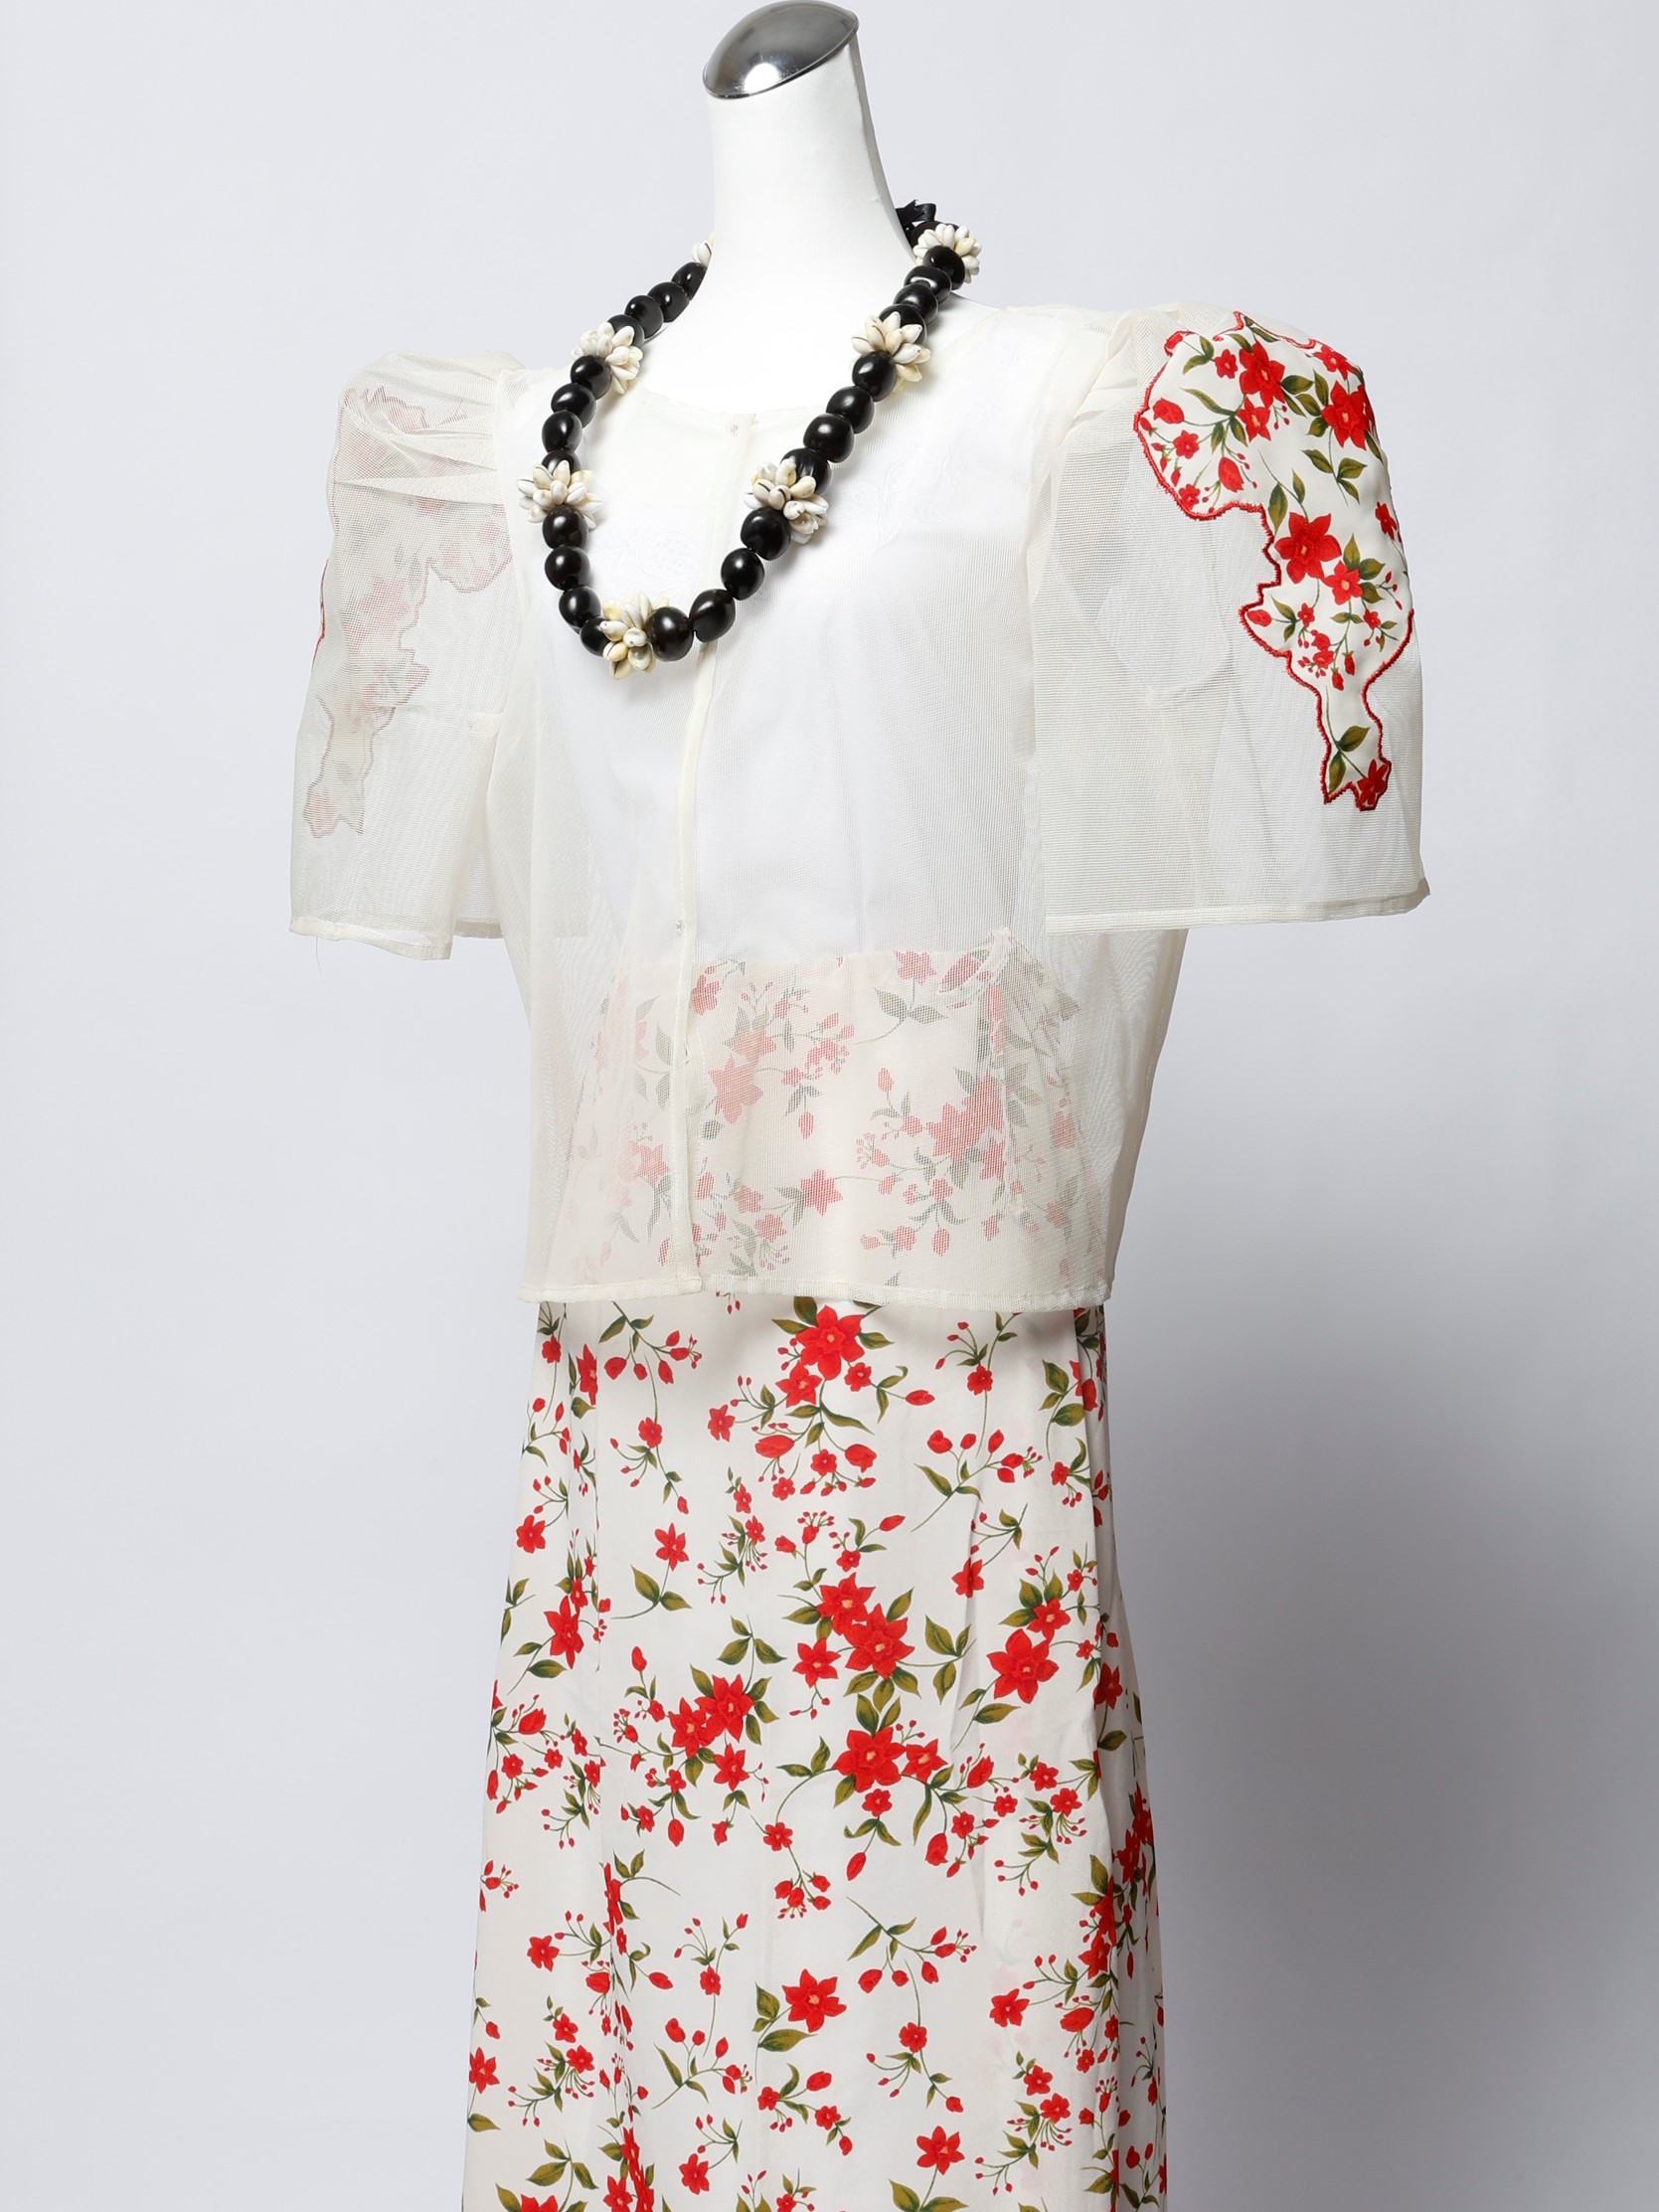 3件式查莫洛麥士蒂索風女性傳統服飾及花圈貝殼項鍊-圖片